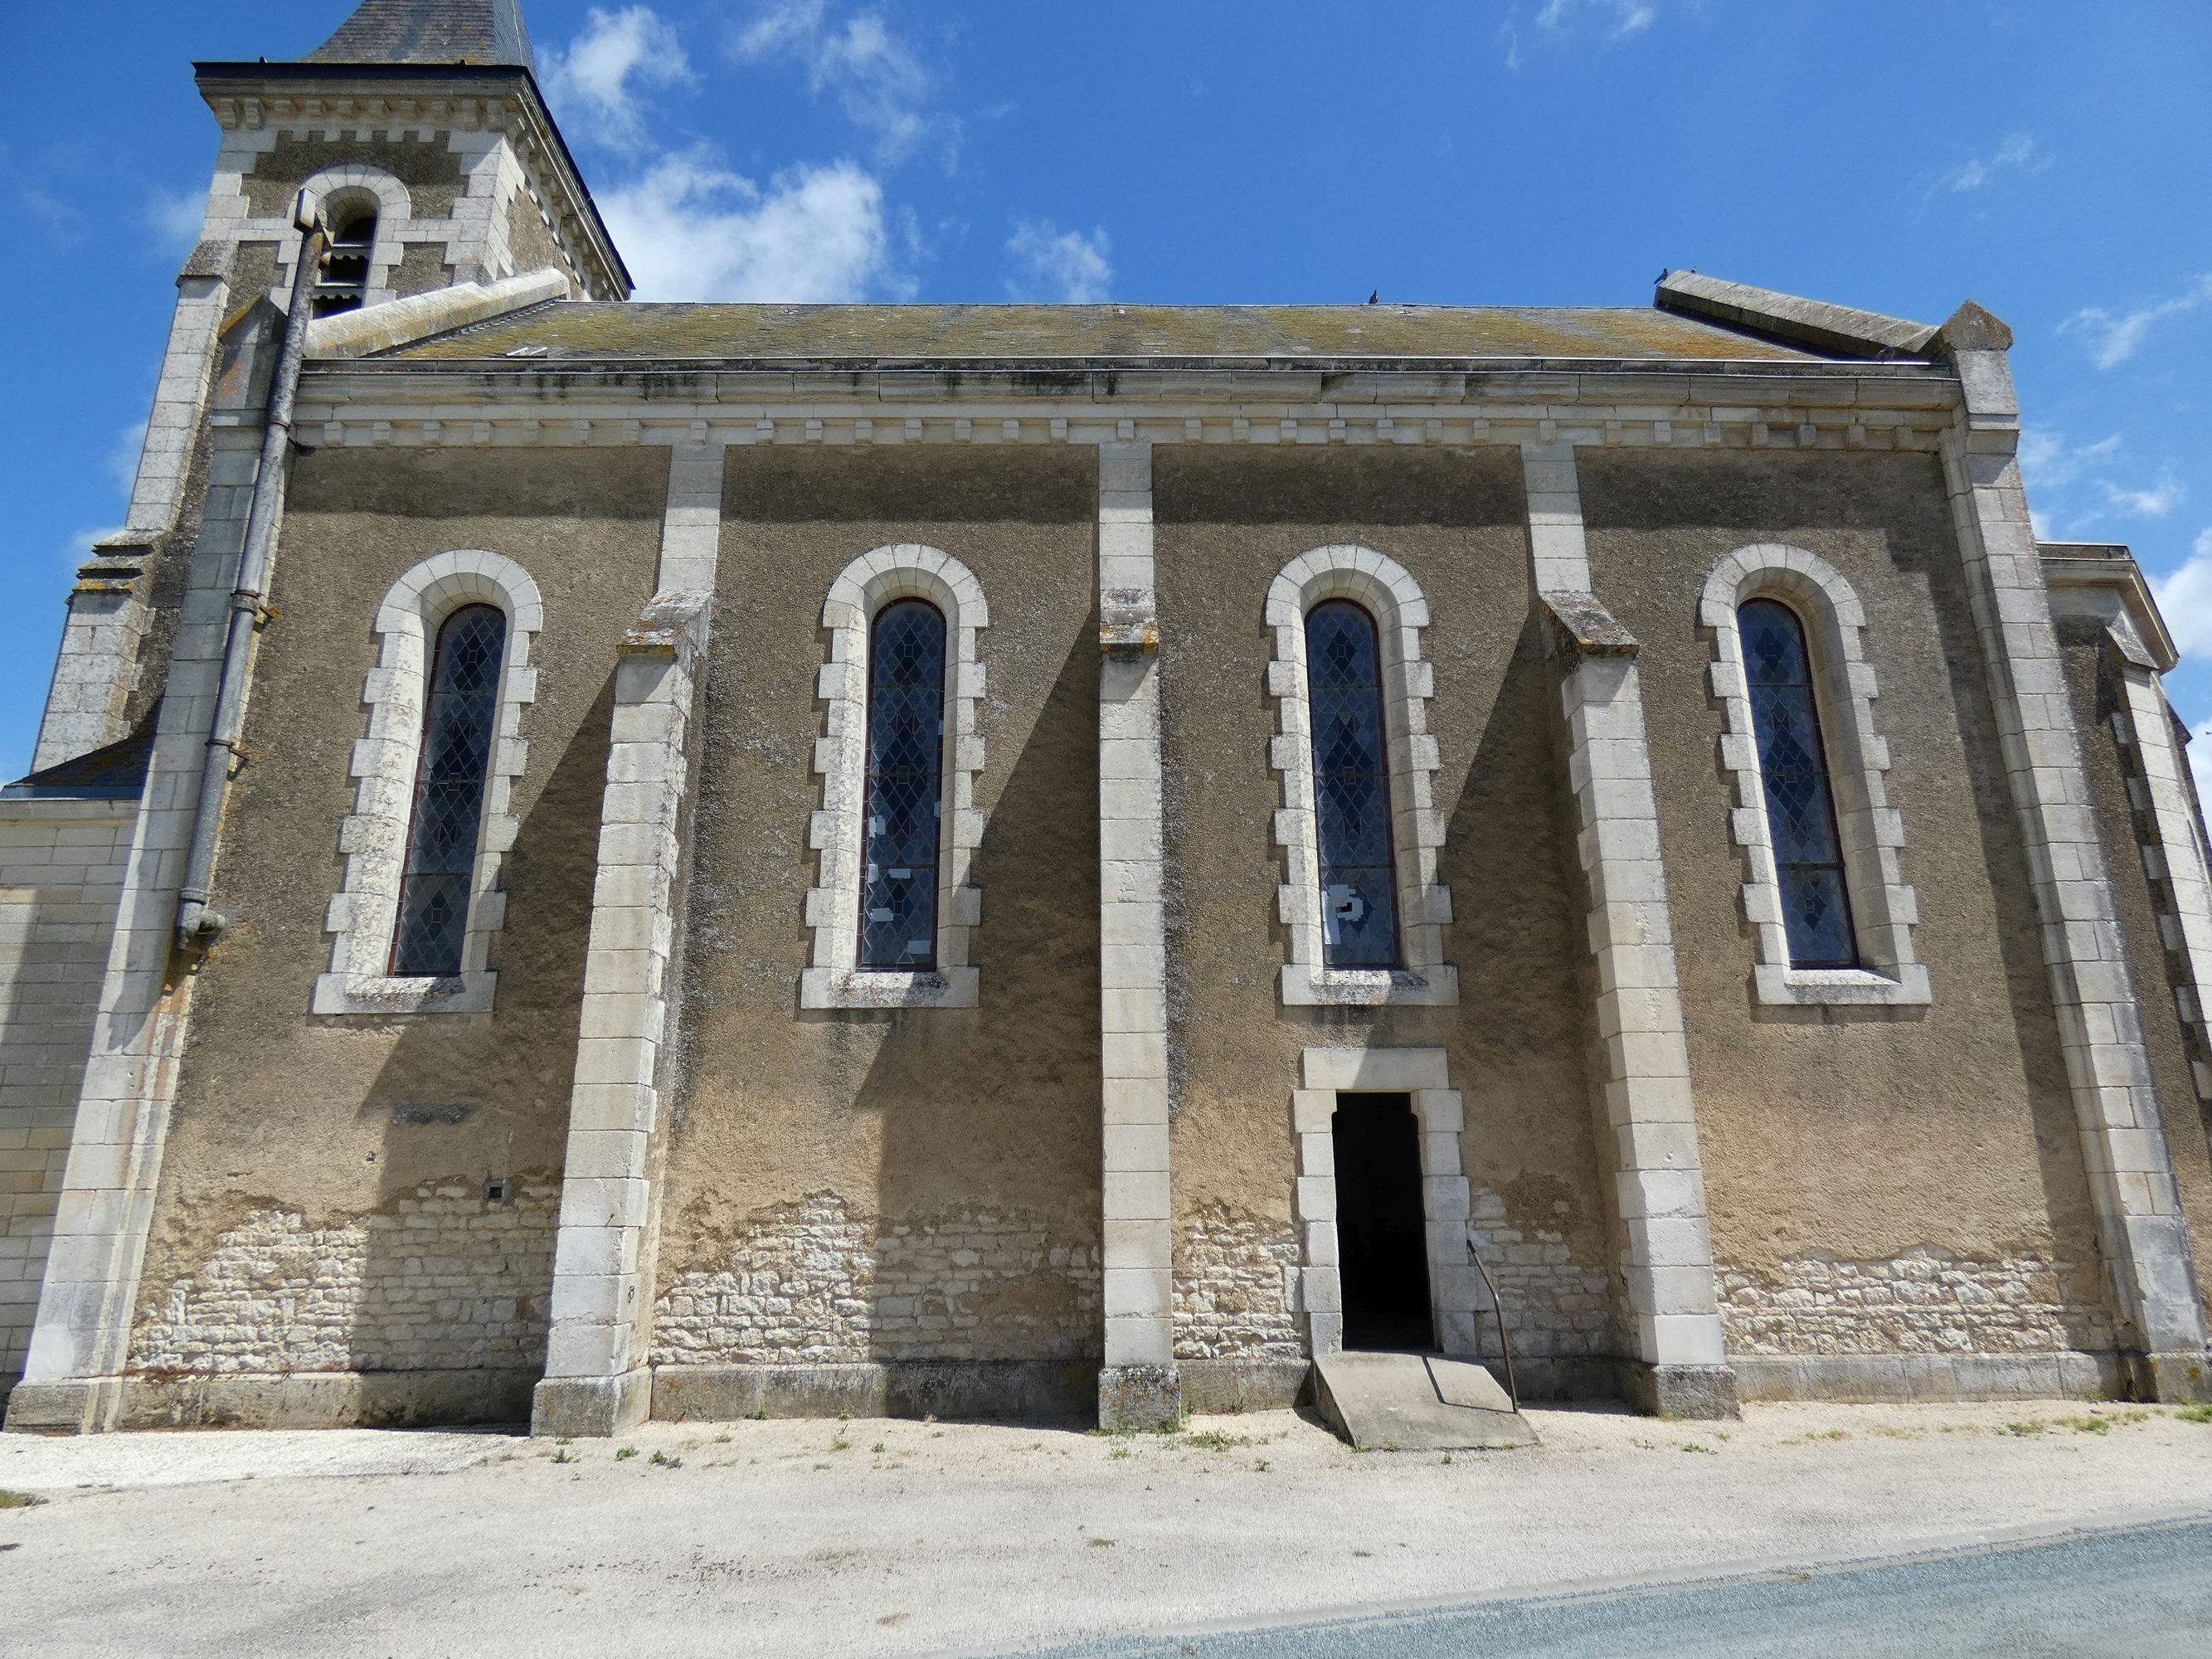 Eglise Notre-Dame de l'Immaculée Conception du Mazeau